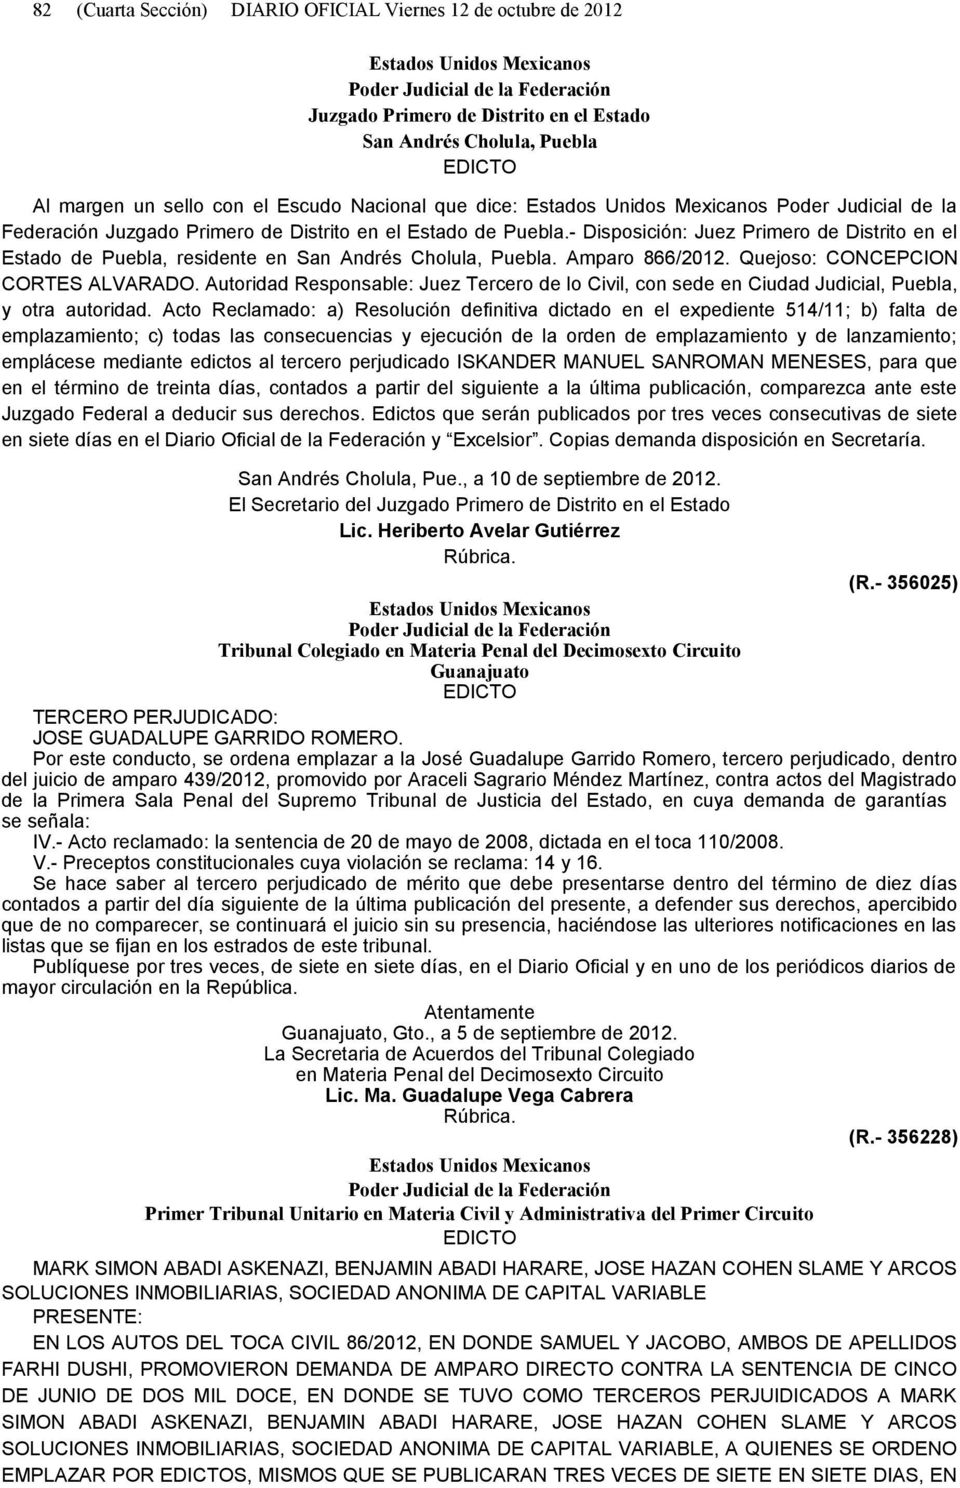 Quejoso: CONCEPCION CORTES ALVARADO. Autoridad Responsable: Juez Tercero de lo Civil, con sede en Ciudad Judicial, Puebla, y otra autoridad.